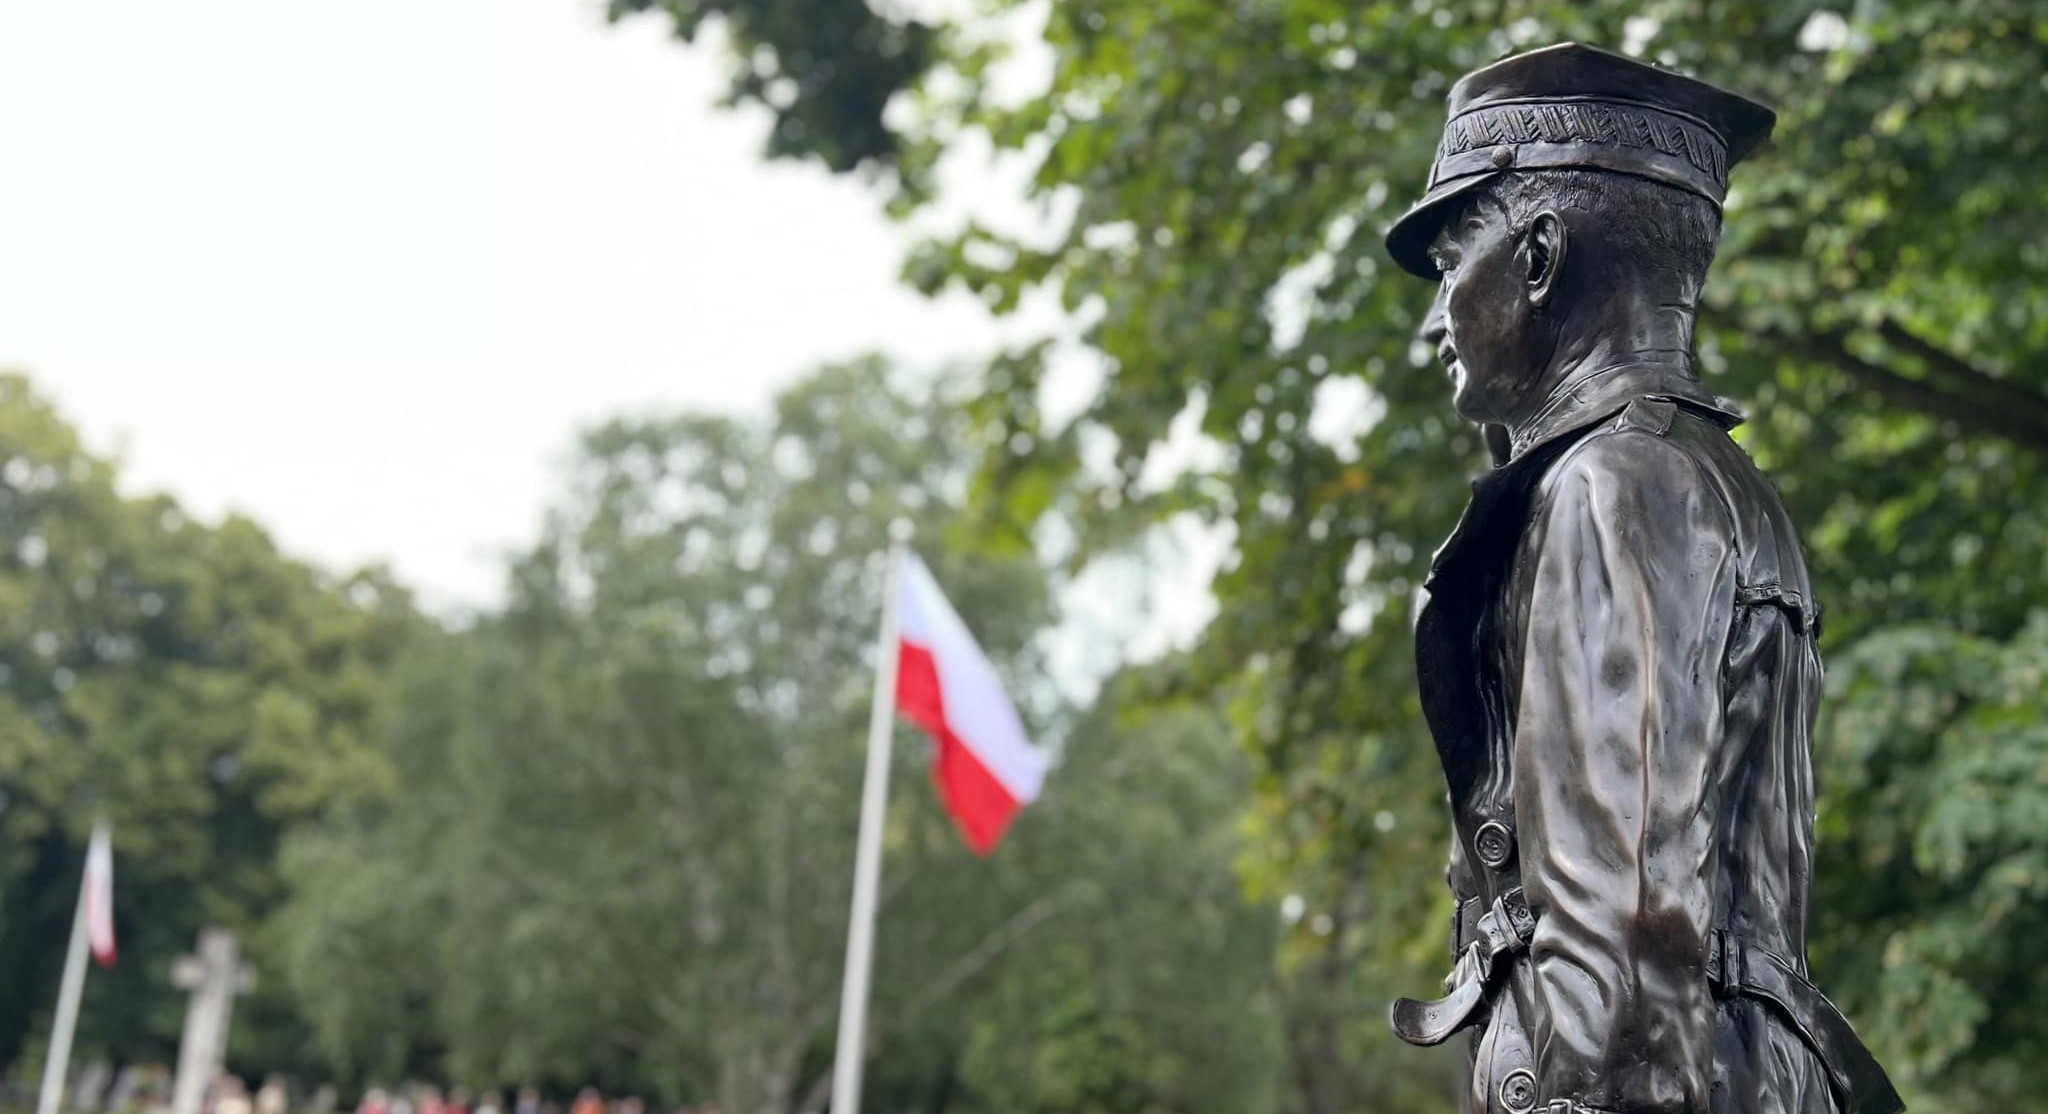 Pomnik polskiego przywódcy wojennego Sikorskiego odsłonięto w Anglii